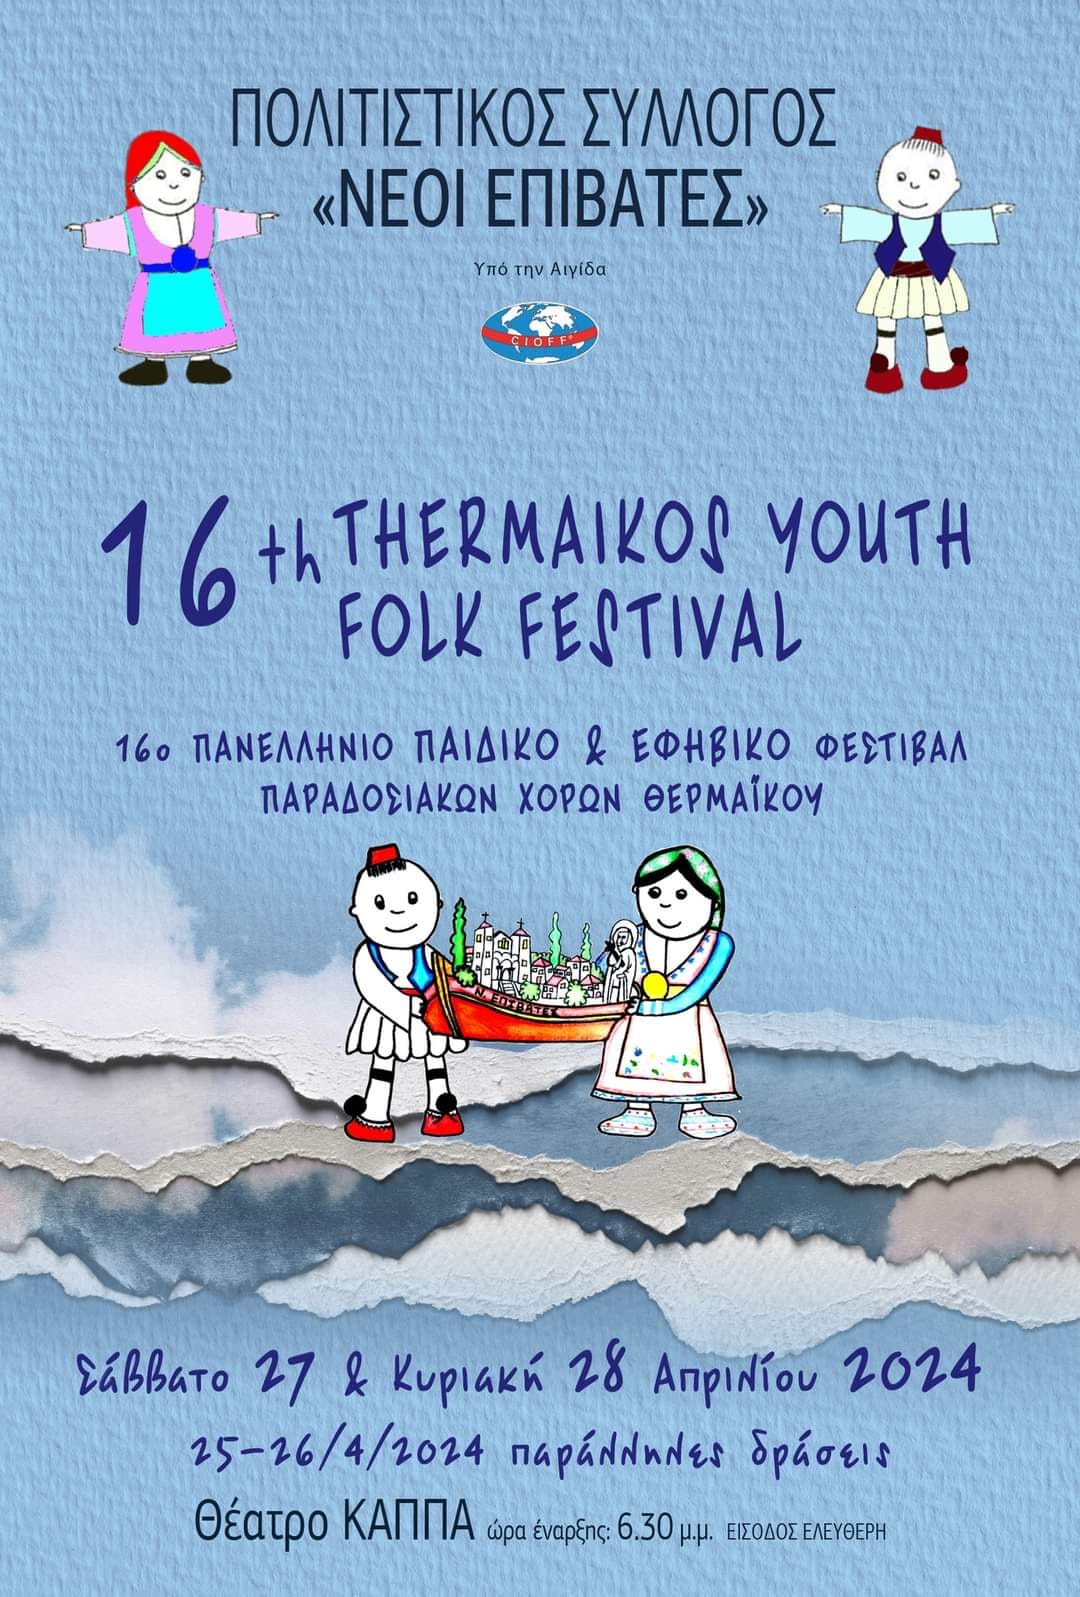 ΣΗΜΕΡΑ: Τελευταία ημέρα του 16ου Thermaikos Youth Folk Festival με “Κοσί” και Χορευτικά Συγκροτήματα